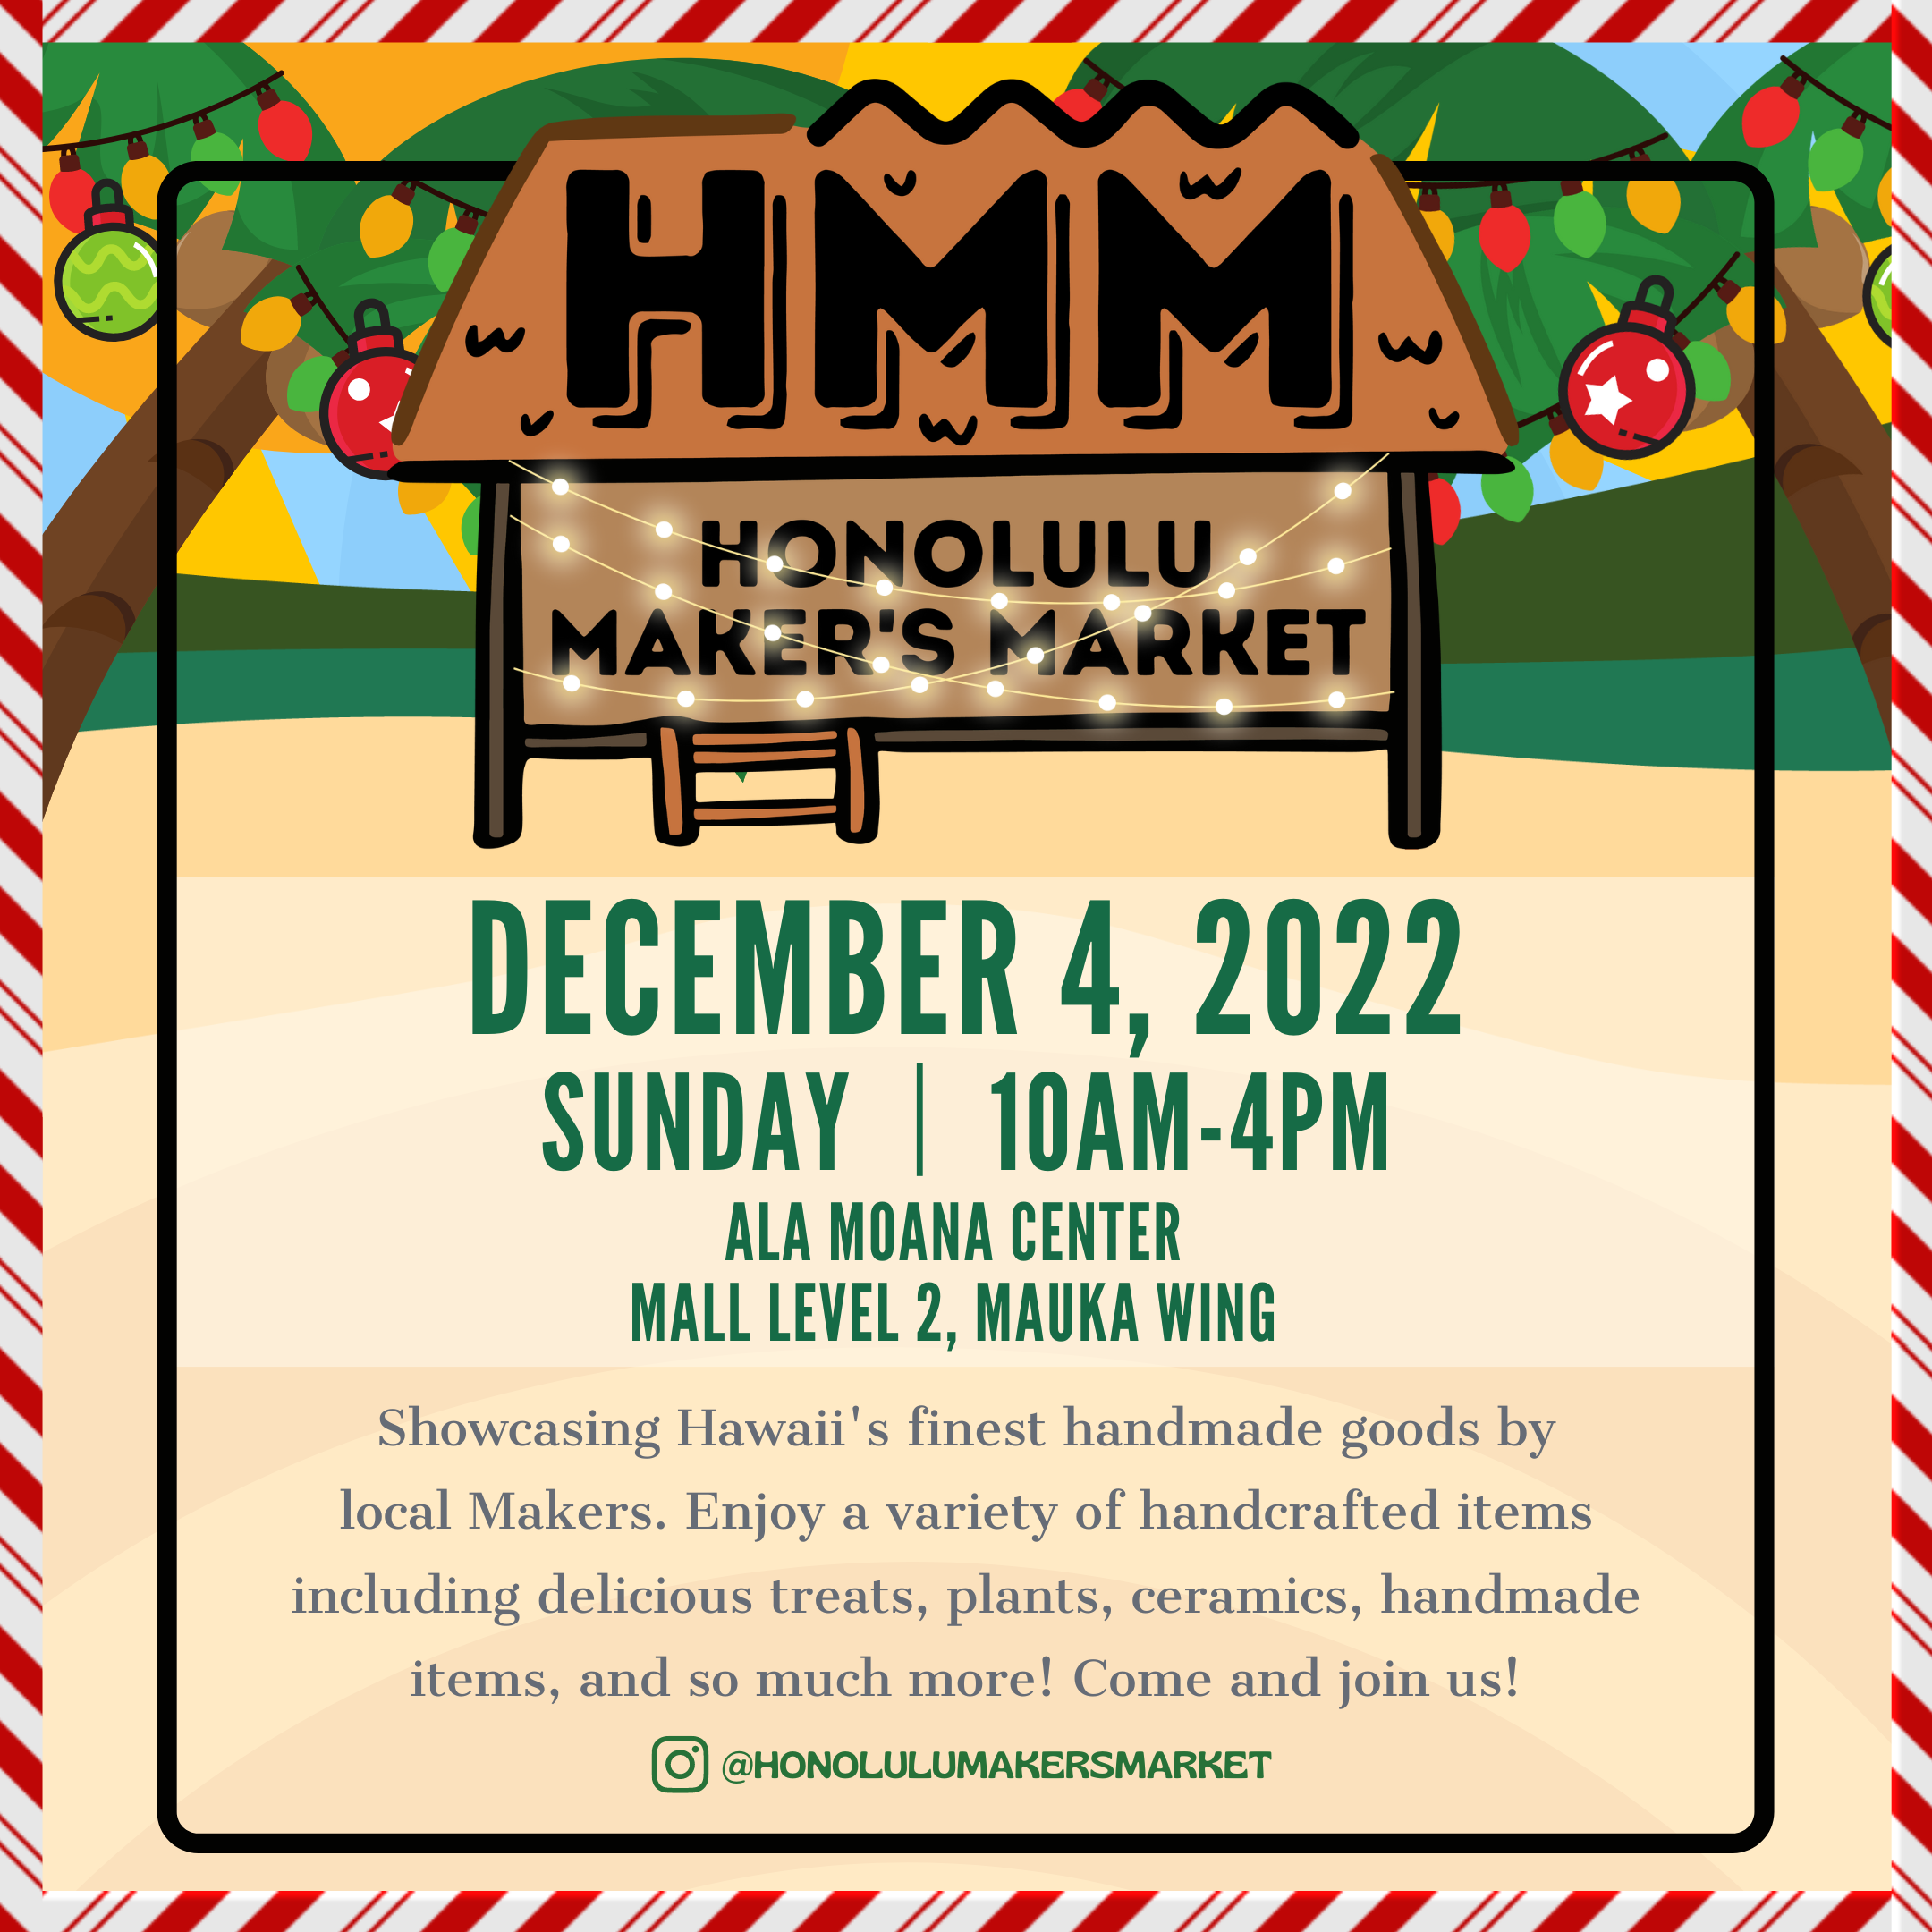 Honolulu makers market flyer